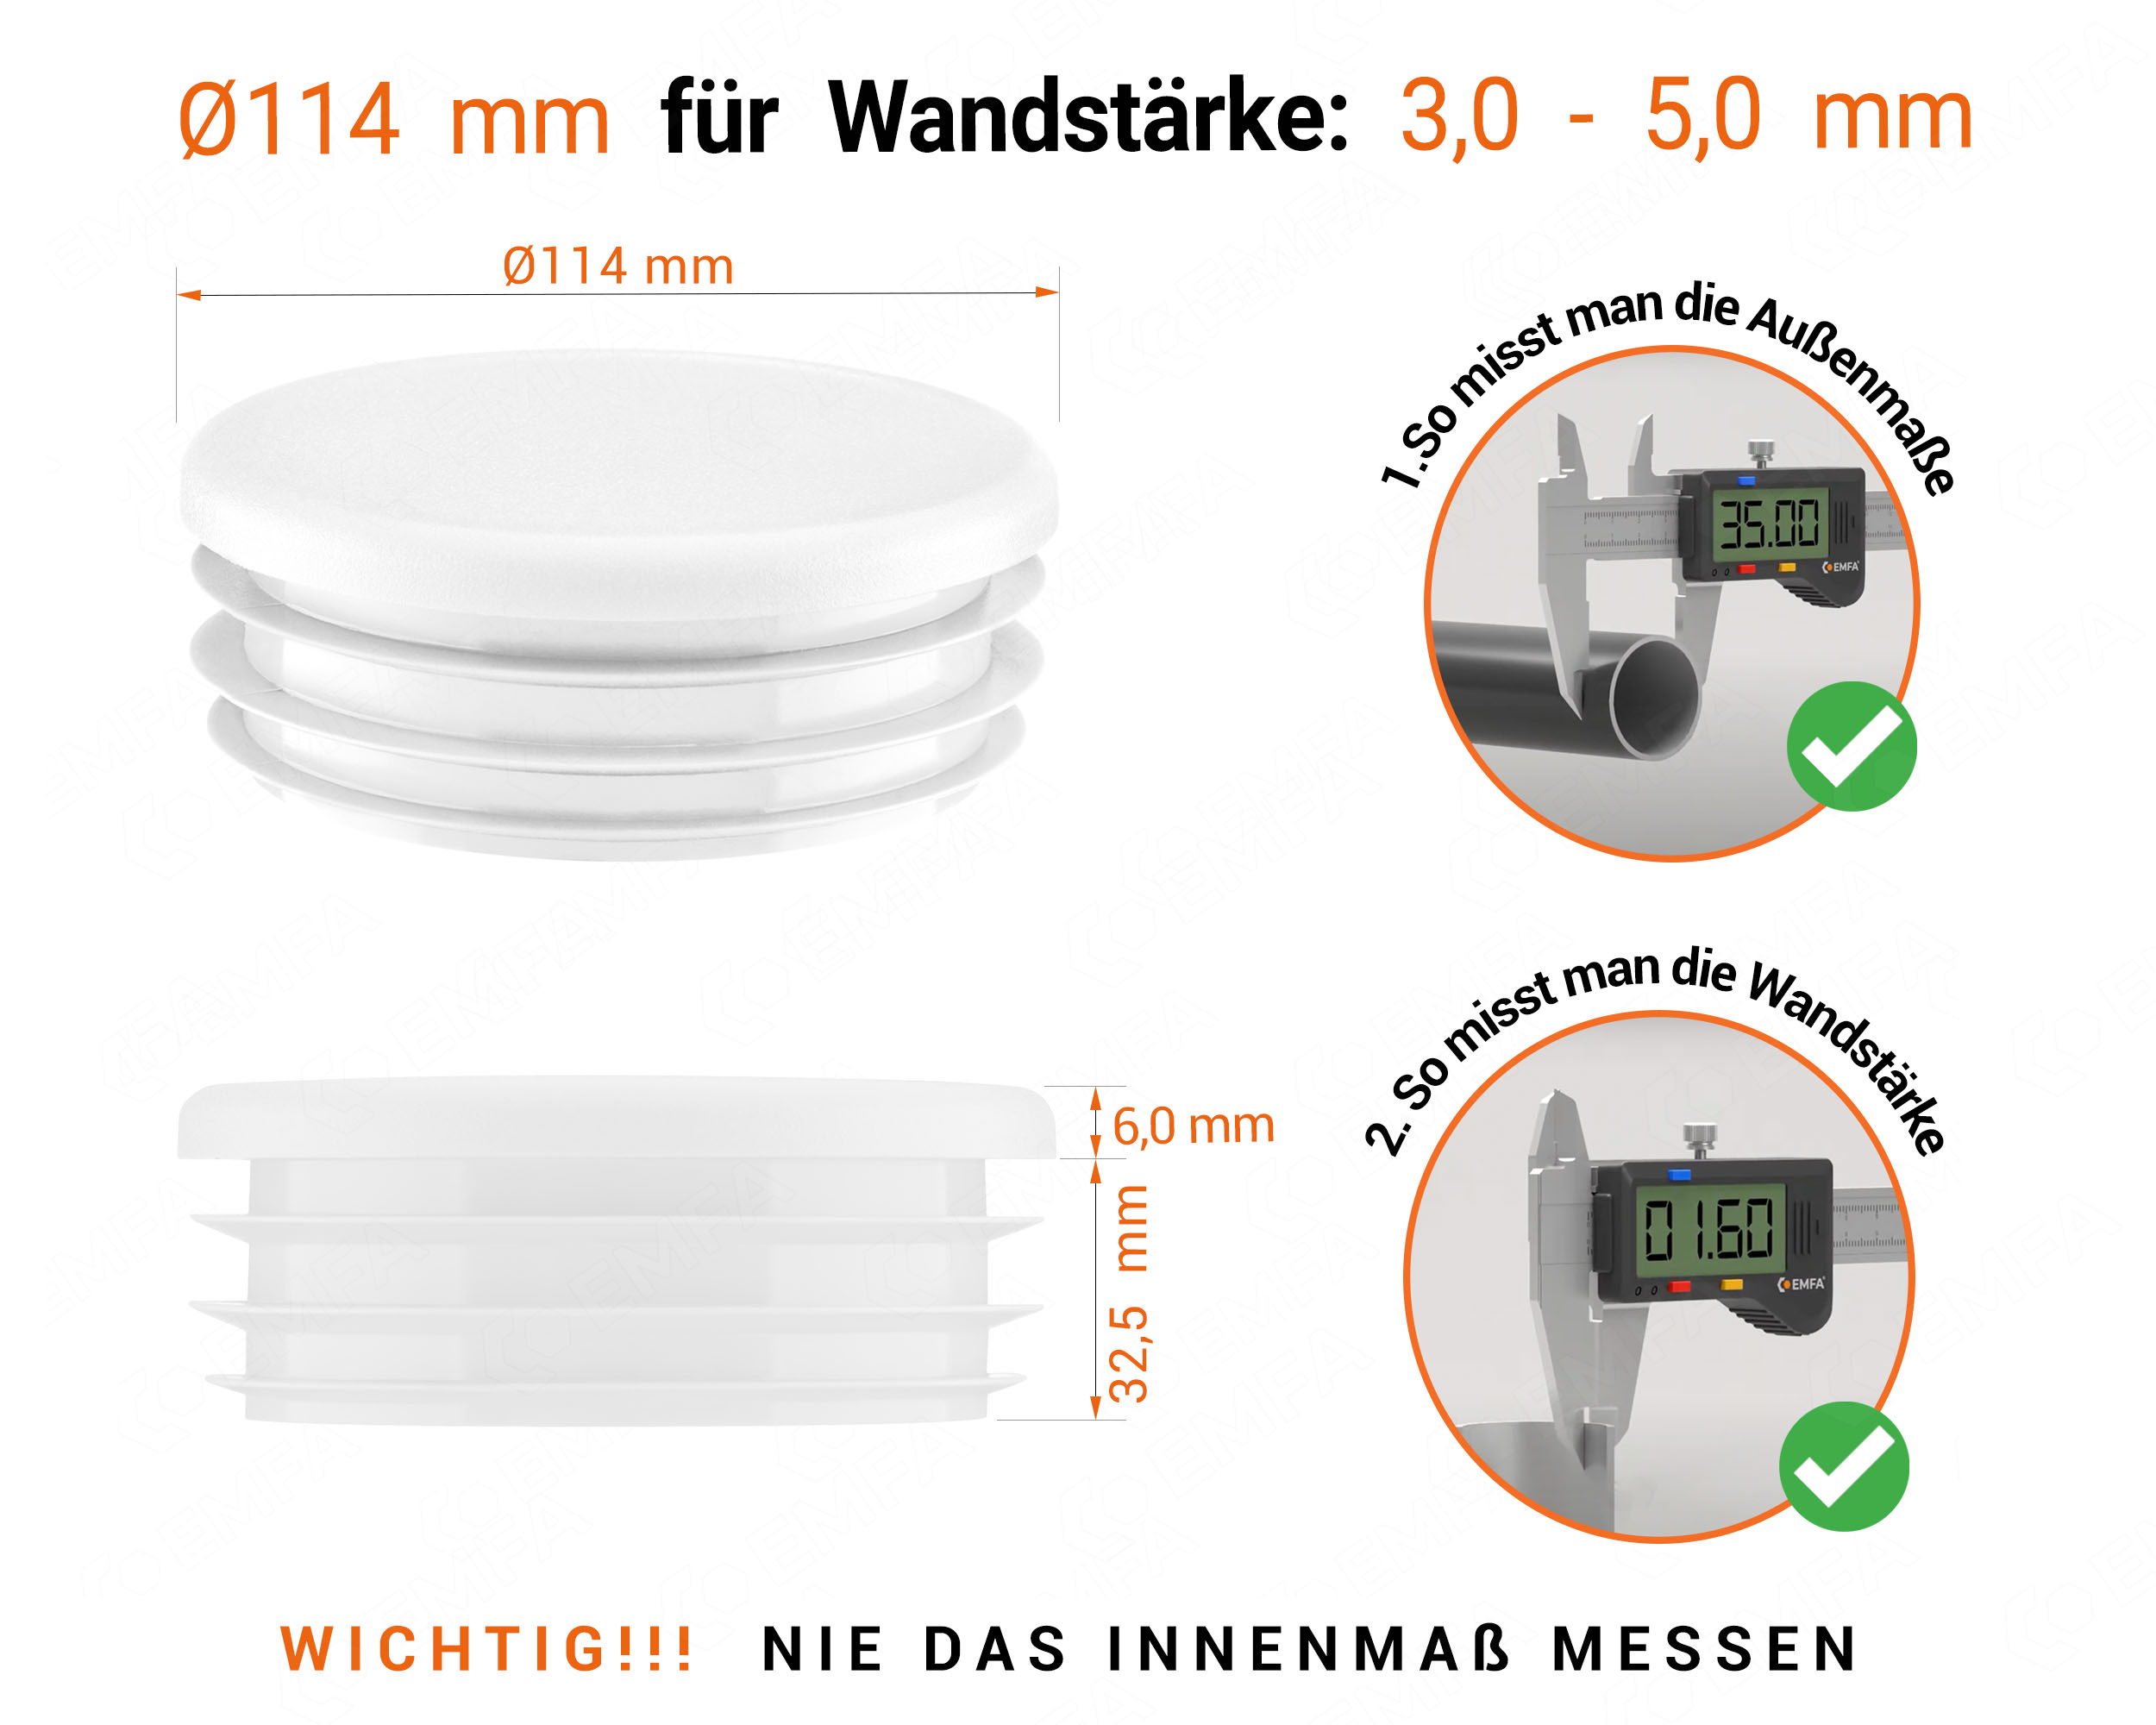 Weiße Endkappe für Rundrohre in der Größe 114 mm mit technischen Abmessungen und Anleitung für korrekte Messung